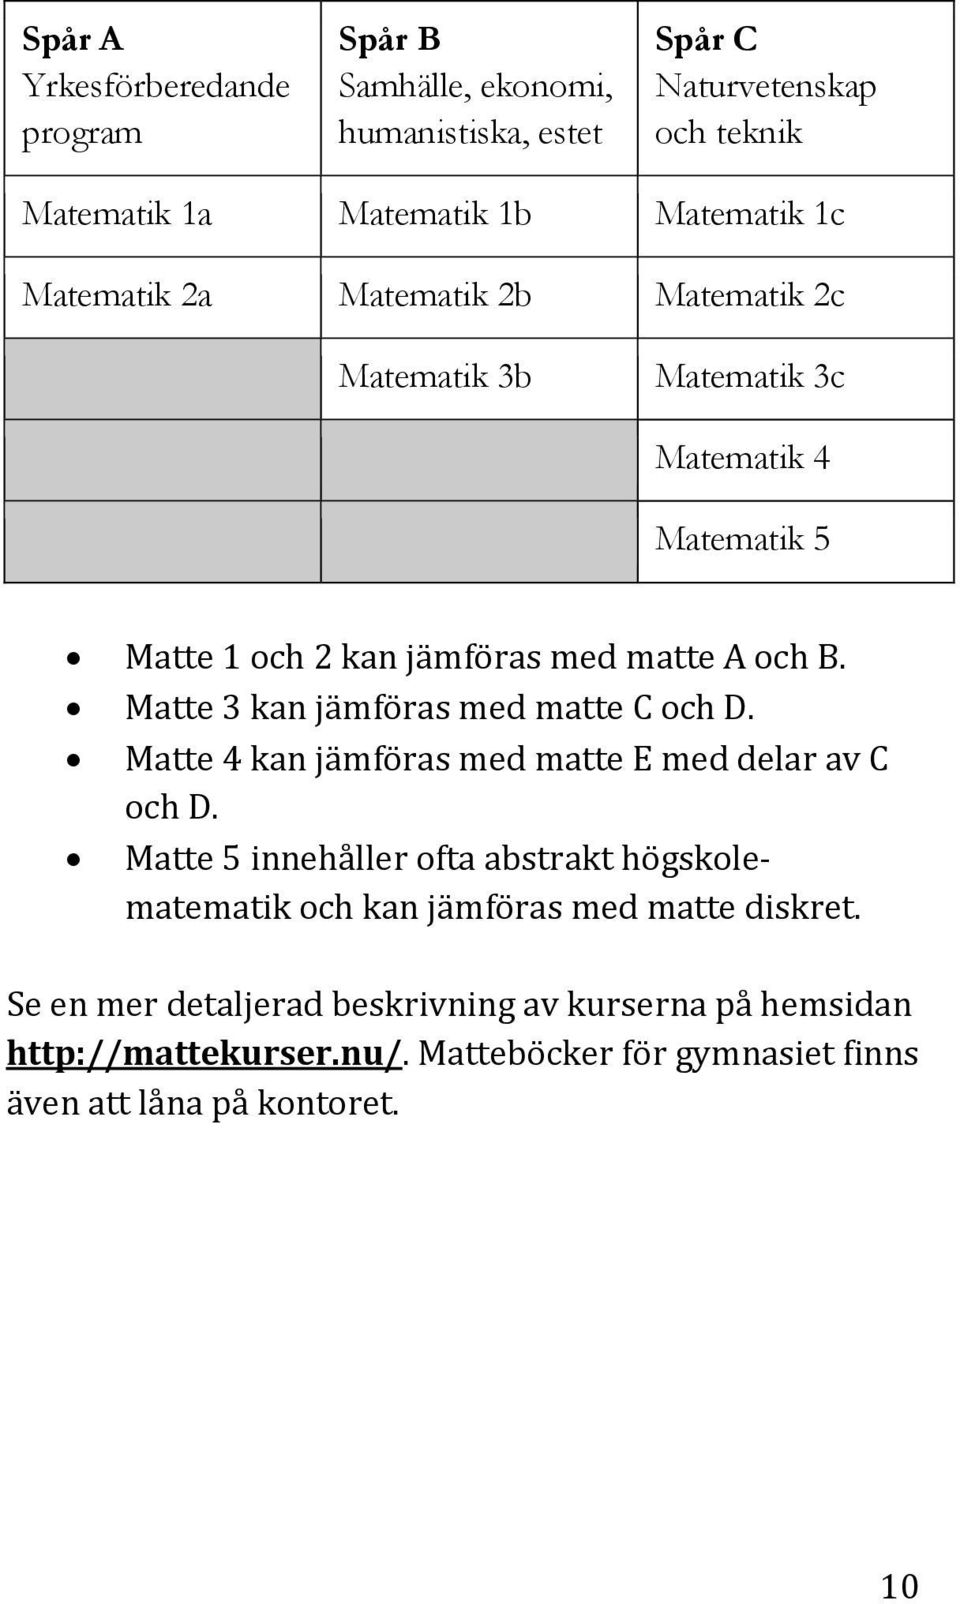 Matte 3 kan jämföras med matte C och D. Matte 4 kan jämföras med matte E med delar av C och D.